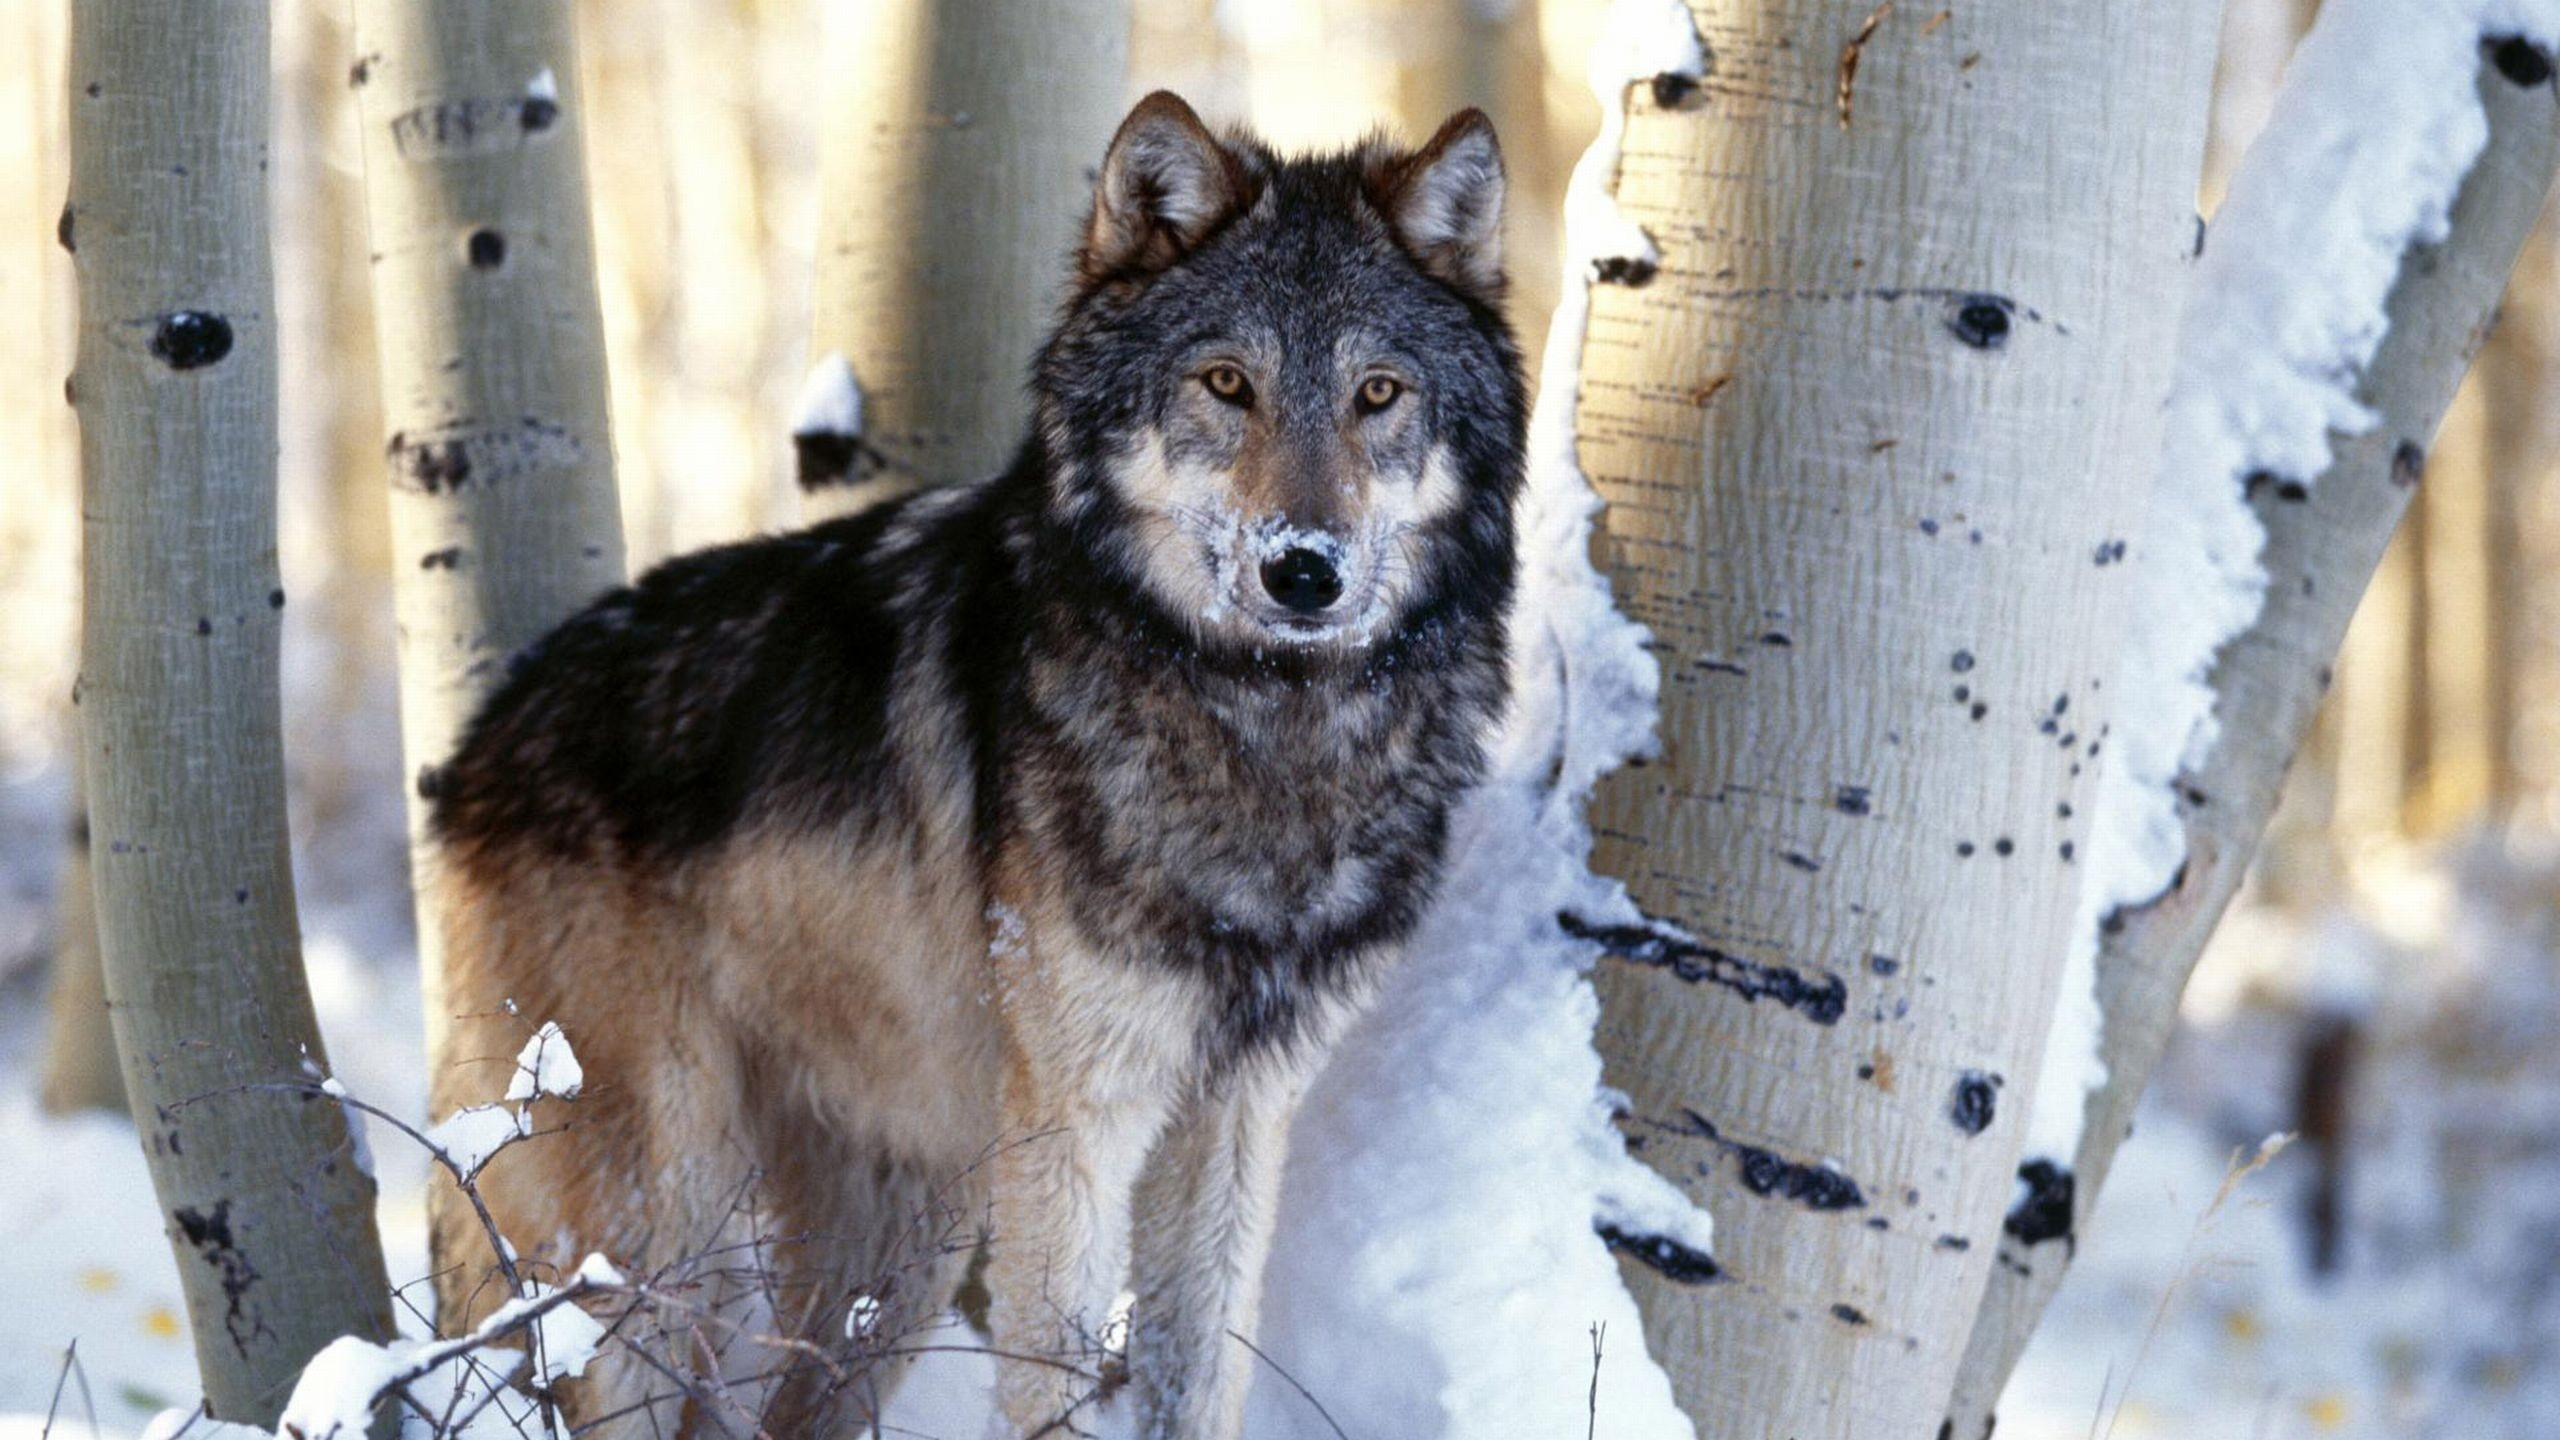 野生动物, 那只狼狗, 树木, 动植物, 土狼 壁纸 2560x1440 允许